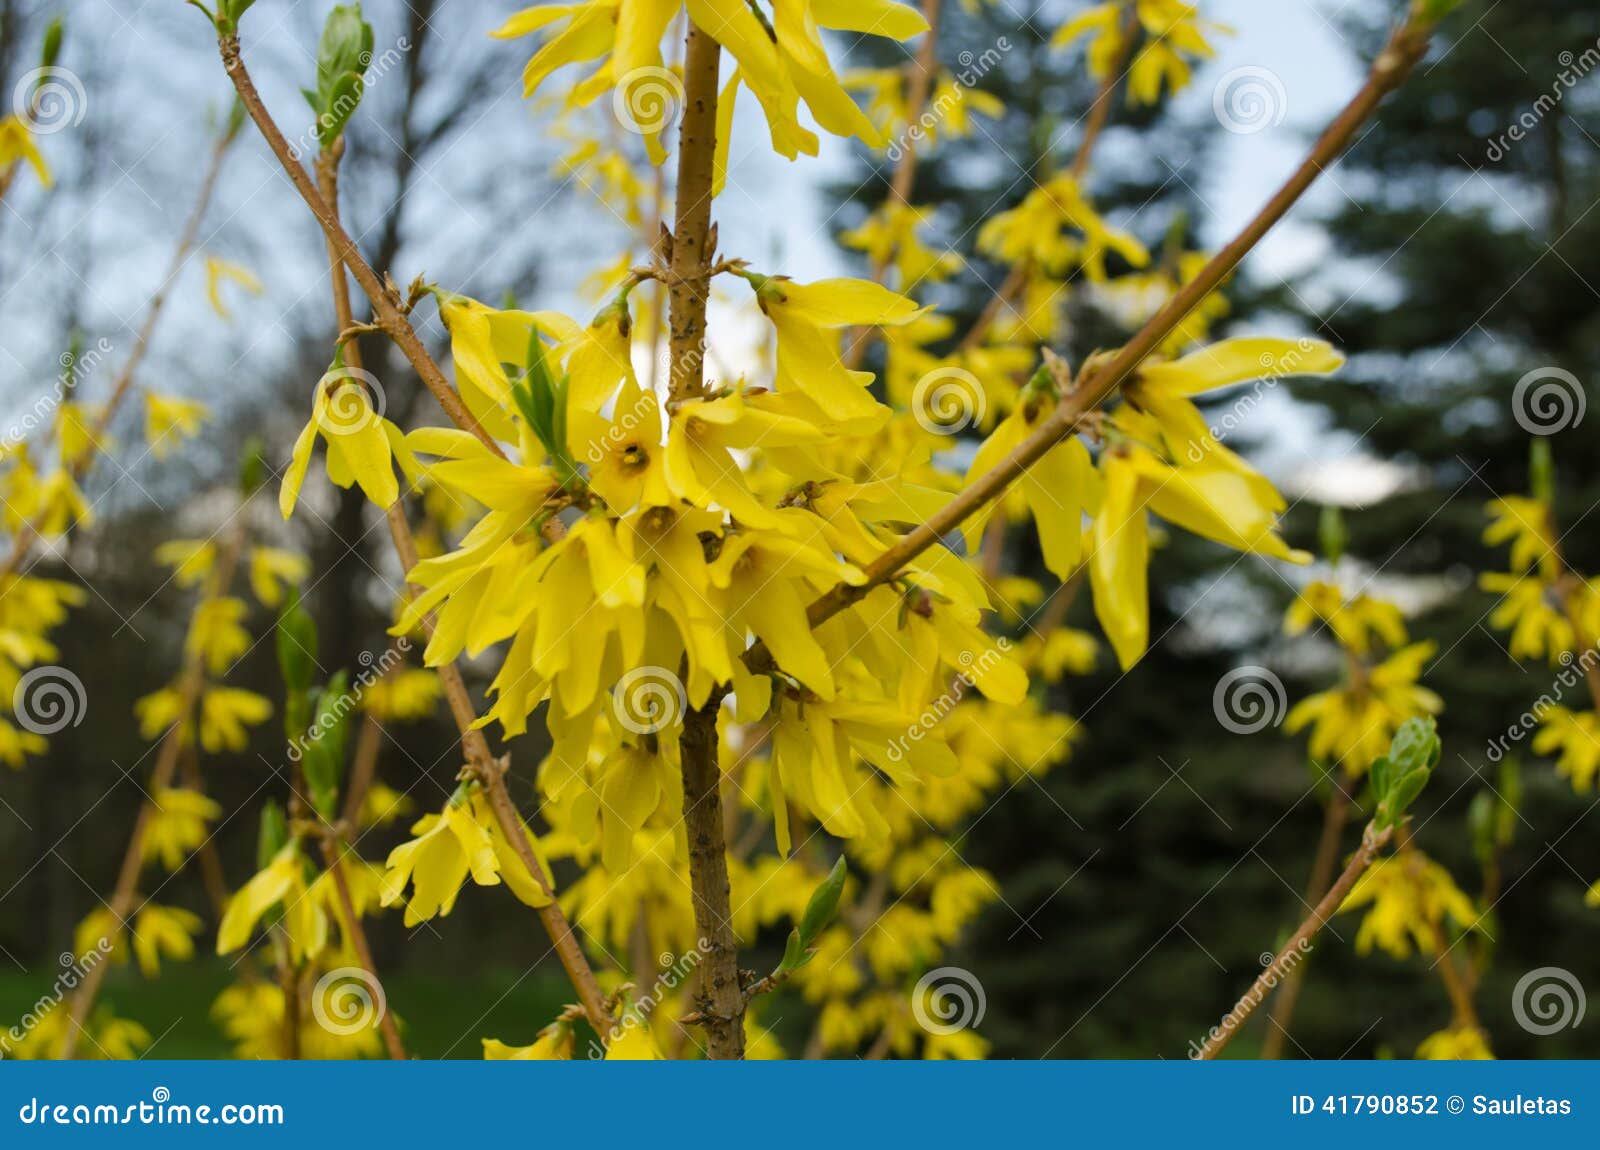 Arbusto Fiori Gialli Primavera.Forsythia Decorativa Dell Arbusto Con I Fiori Gialli Fotografia